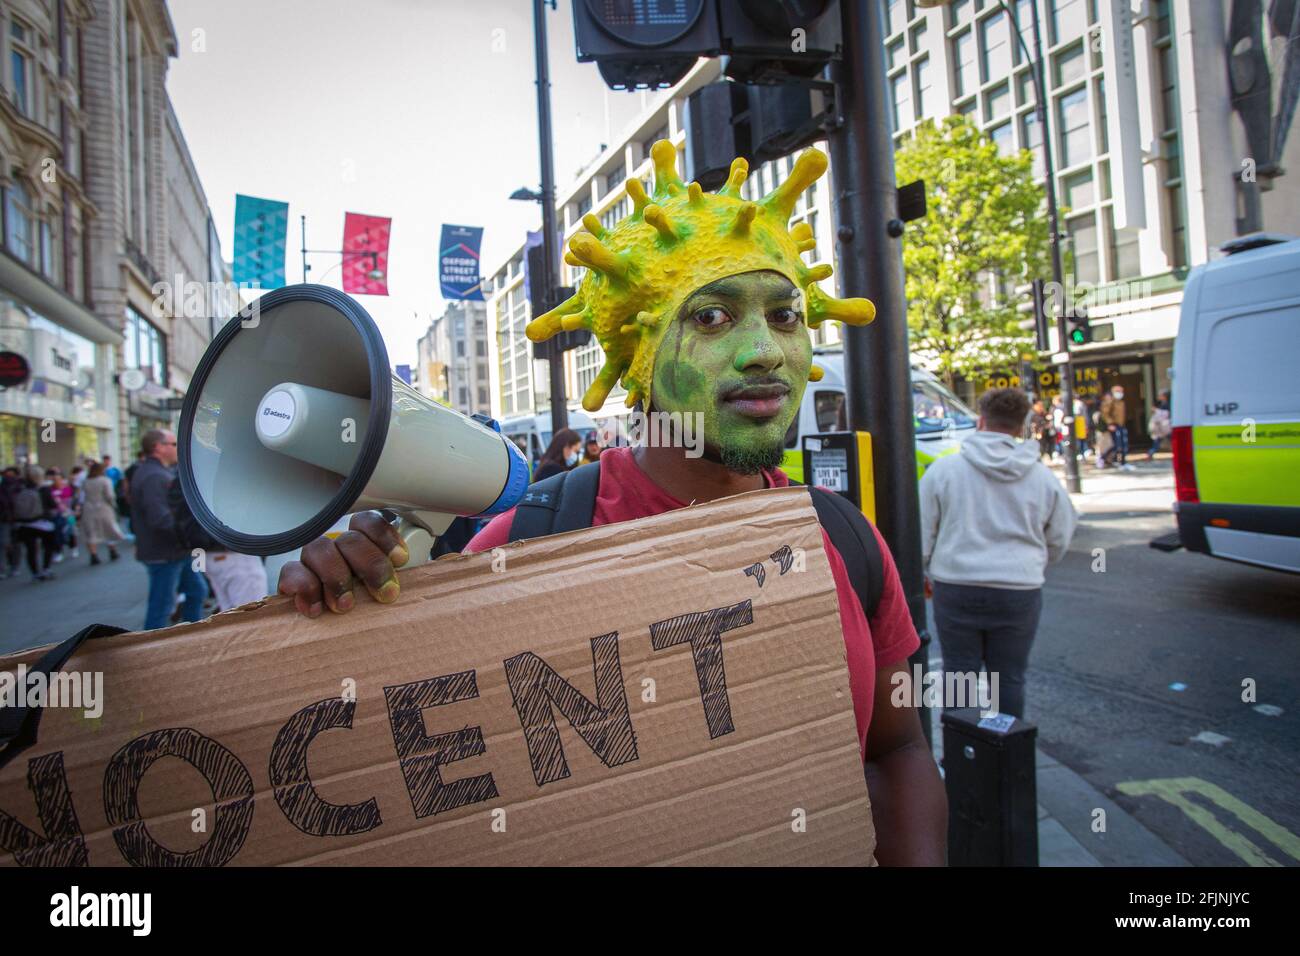 24 aprile 2021, Londra, Inghilterra, Regno Unito: Un uomo che indossa un costume da virus corona mentre prende parte a una protesta anti-blocco ‘Unite per la libertà’ Foto Stock